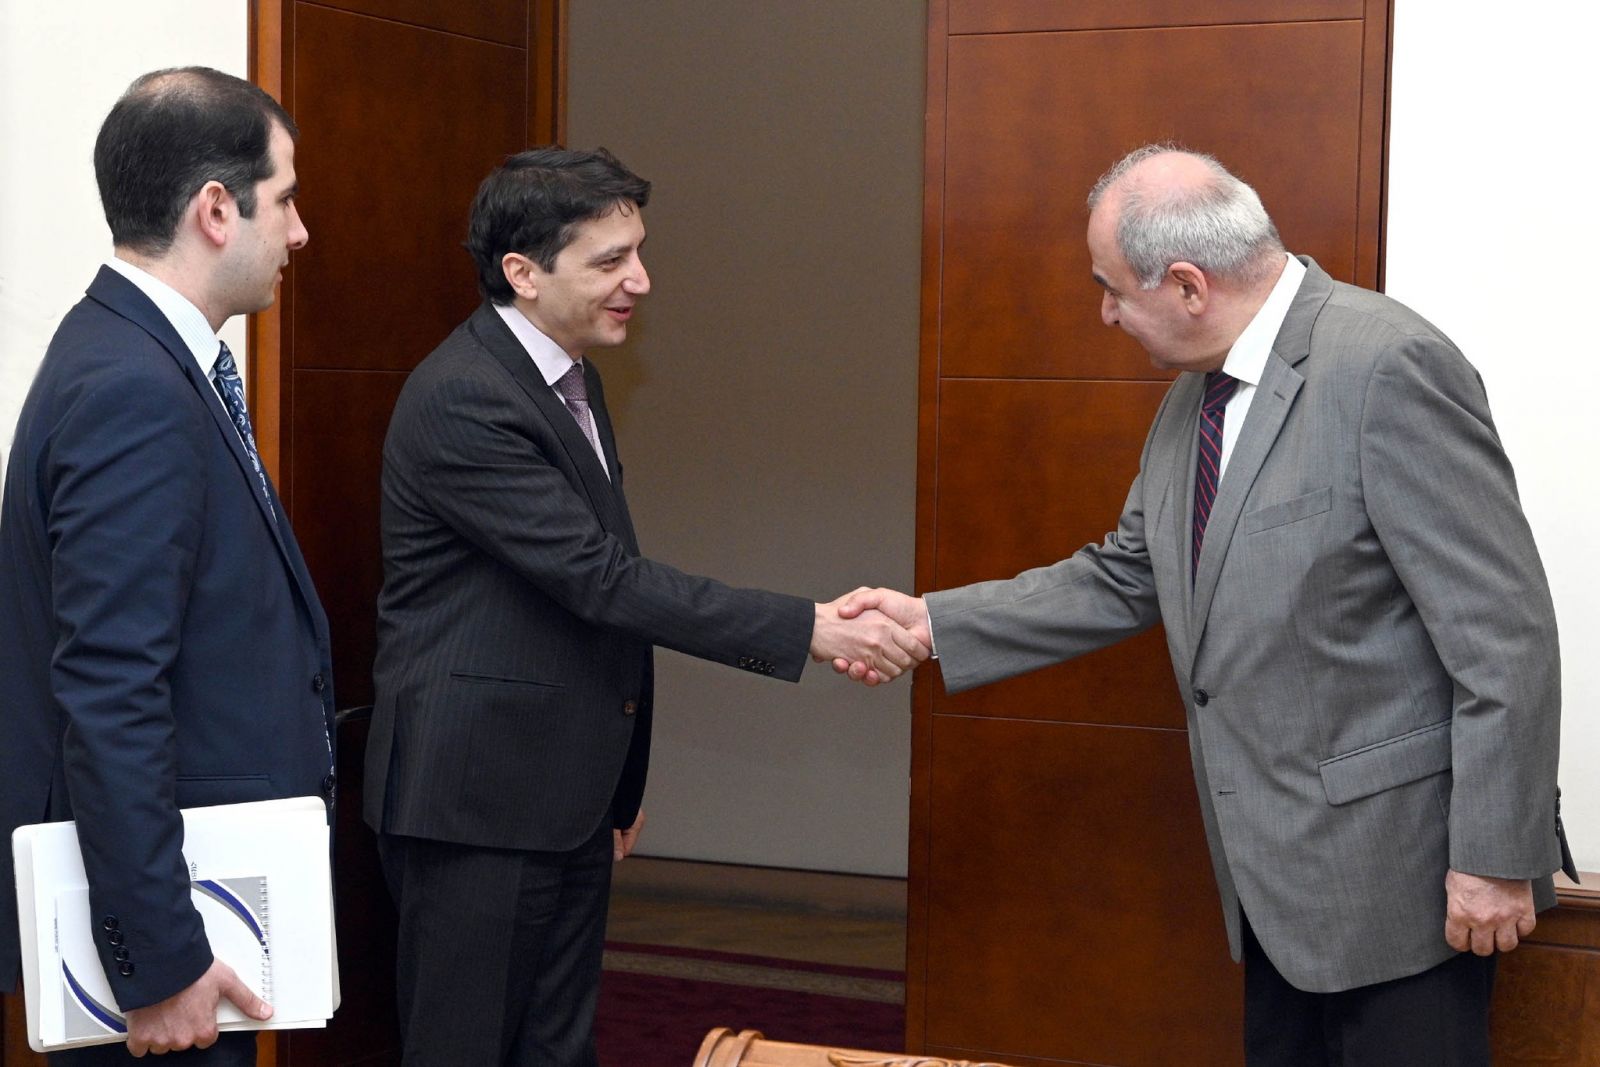 Vahe Hovhannisyan dan Duta Besar Georgia membahas isu-isu terkait kerja sama kementerian keuangan kedua negara